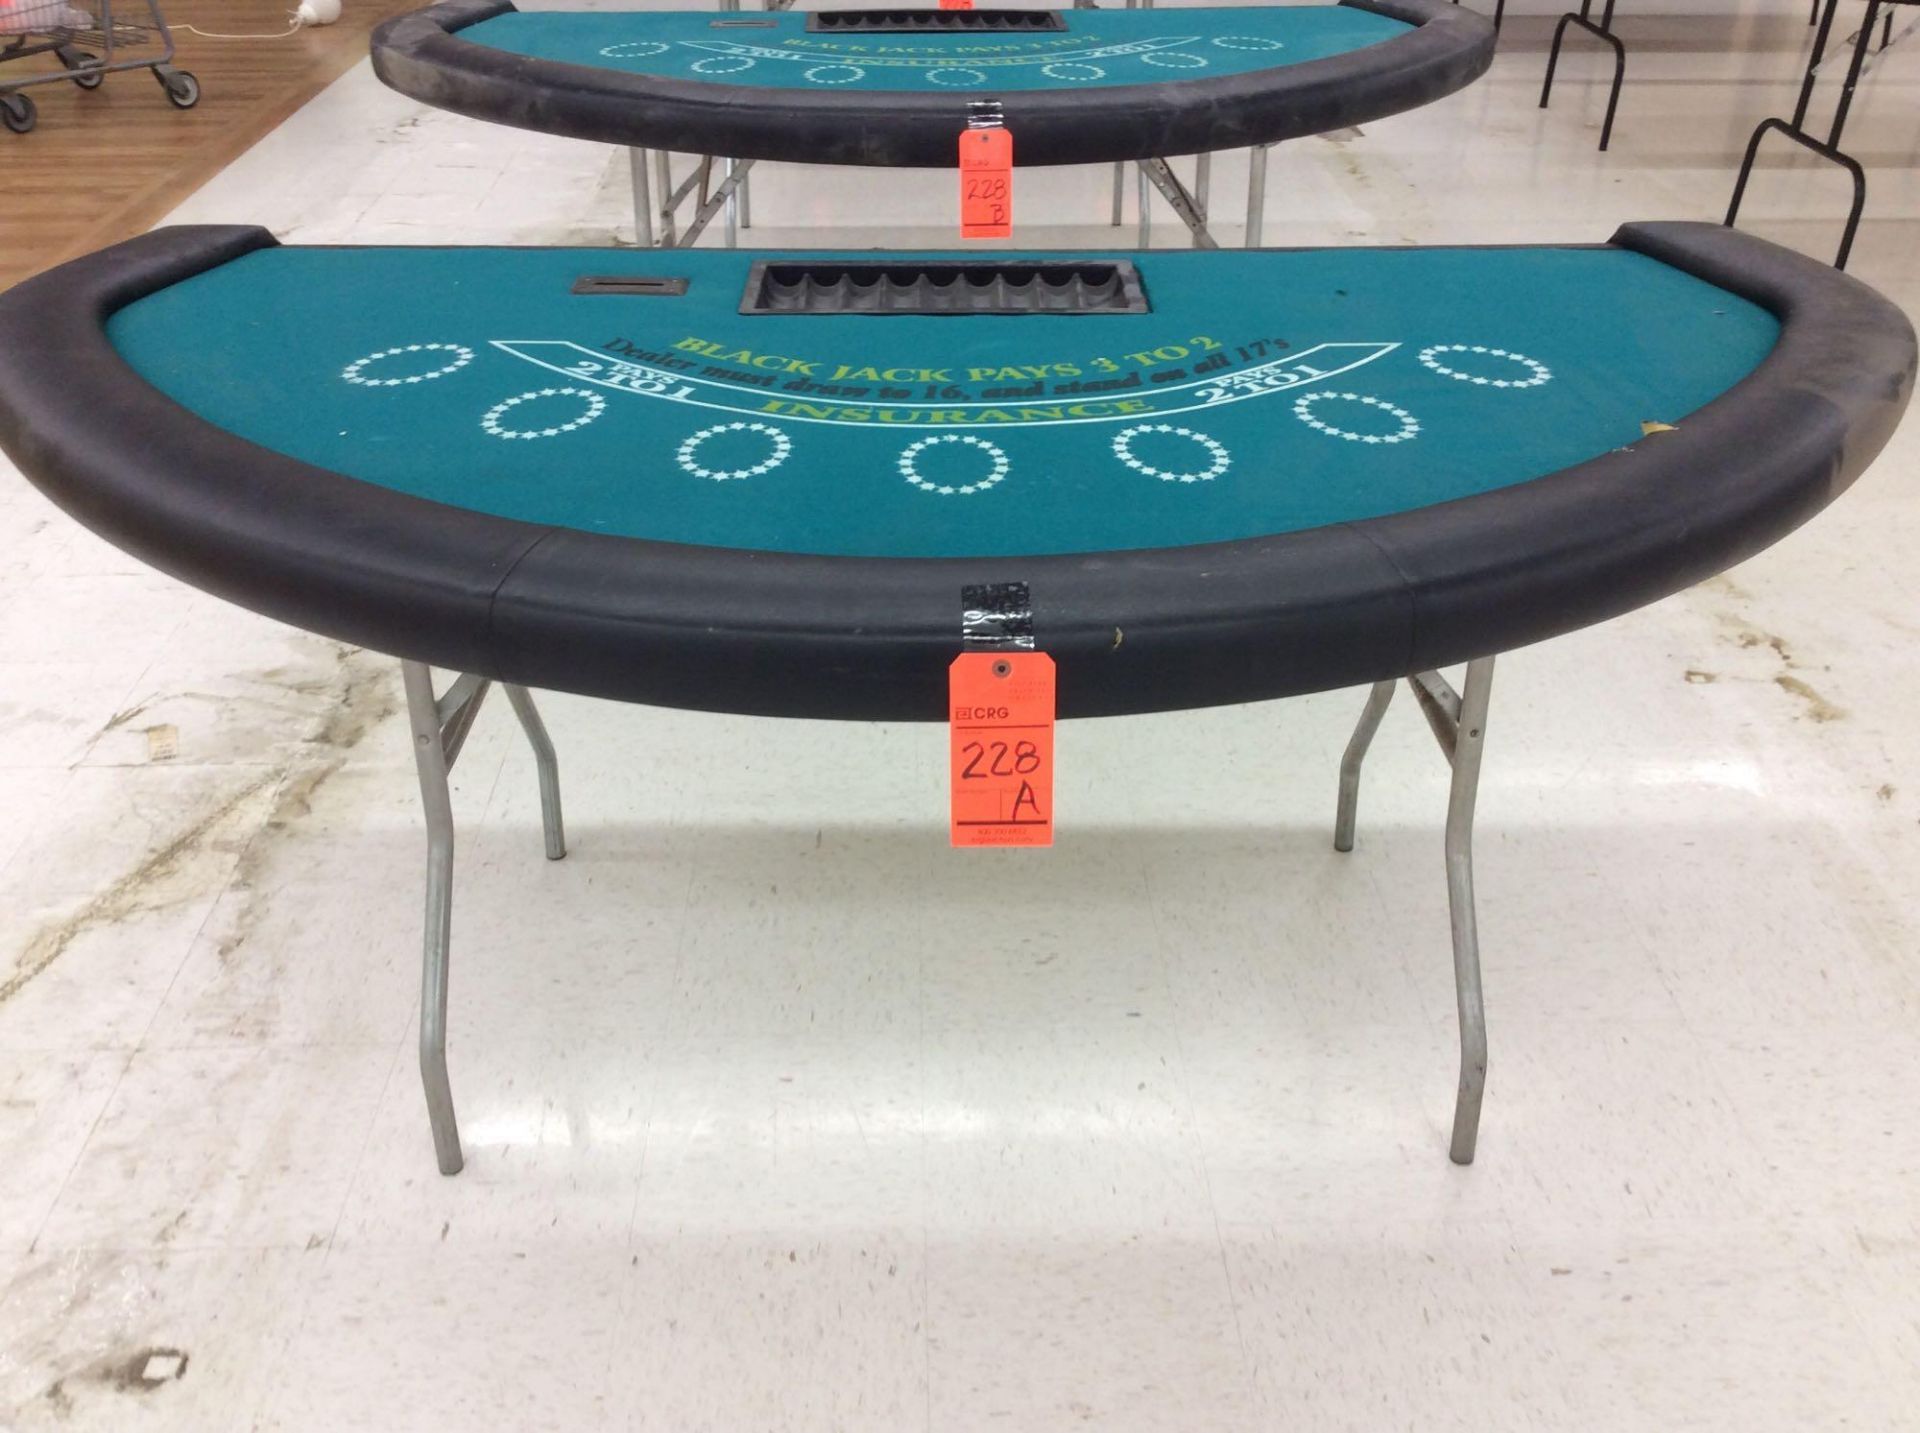 Blackjack table w/folding legs